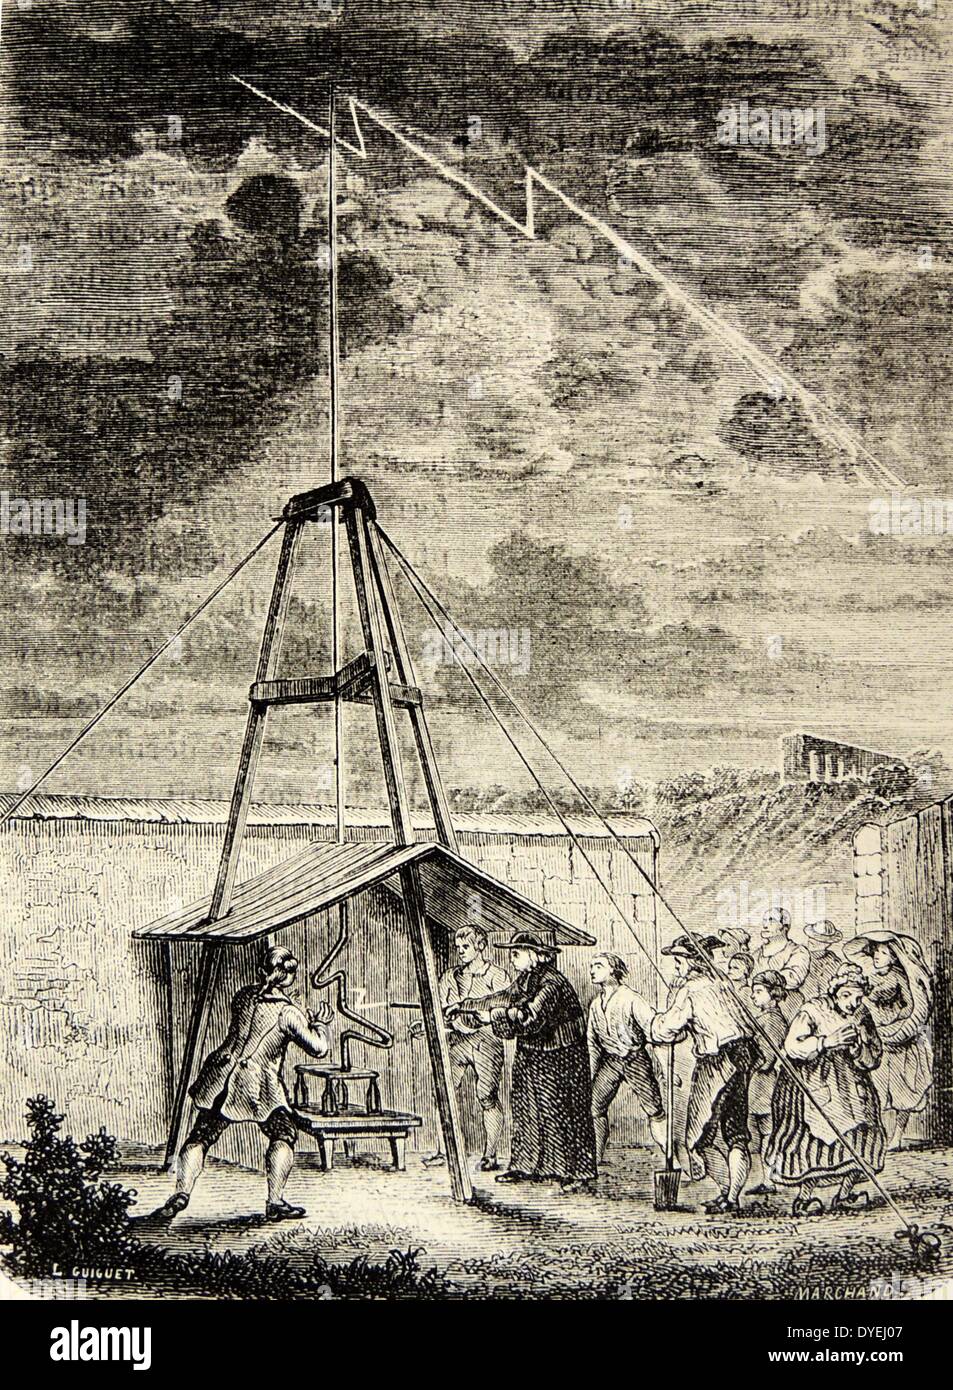 Thomas Dalibard (1803-1779) botaniste français, ce qui démontre la nature électrique de la foudre 10 mai 1752, Franklin's kite expérience précédente. Toutefois, il a été demandé que les écrits de Franklin Dalibard's experiment. La gravure, Paris, 1870. Banque D'Images